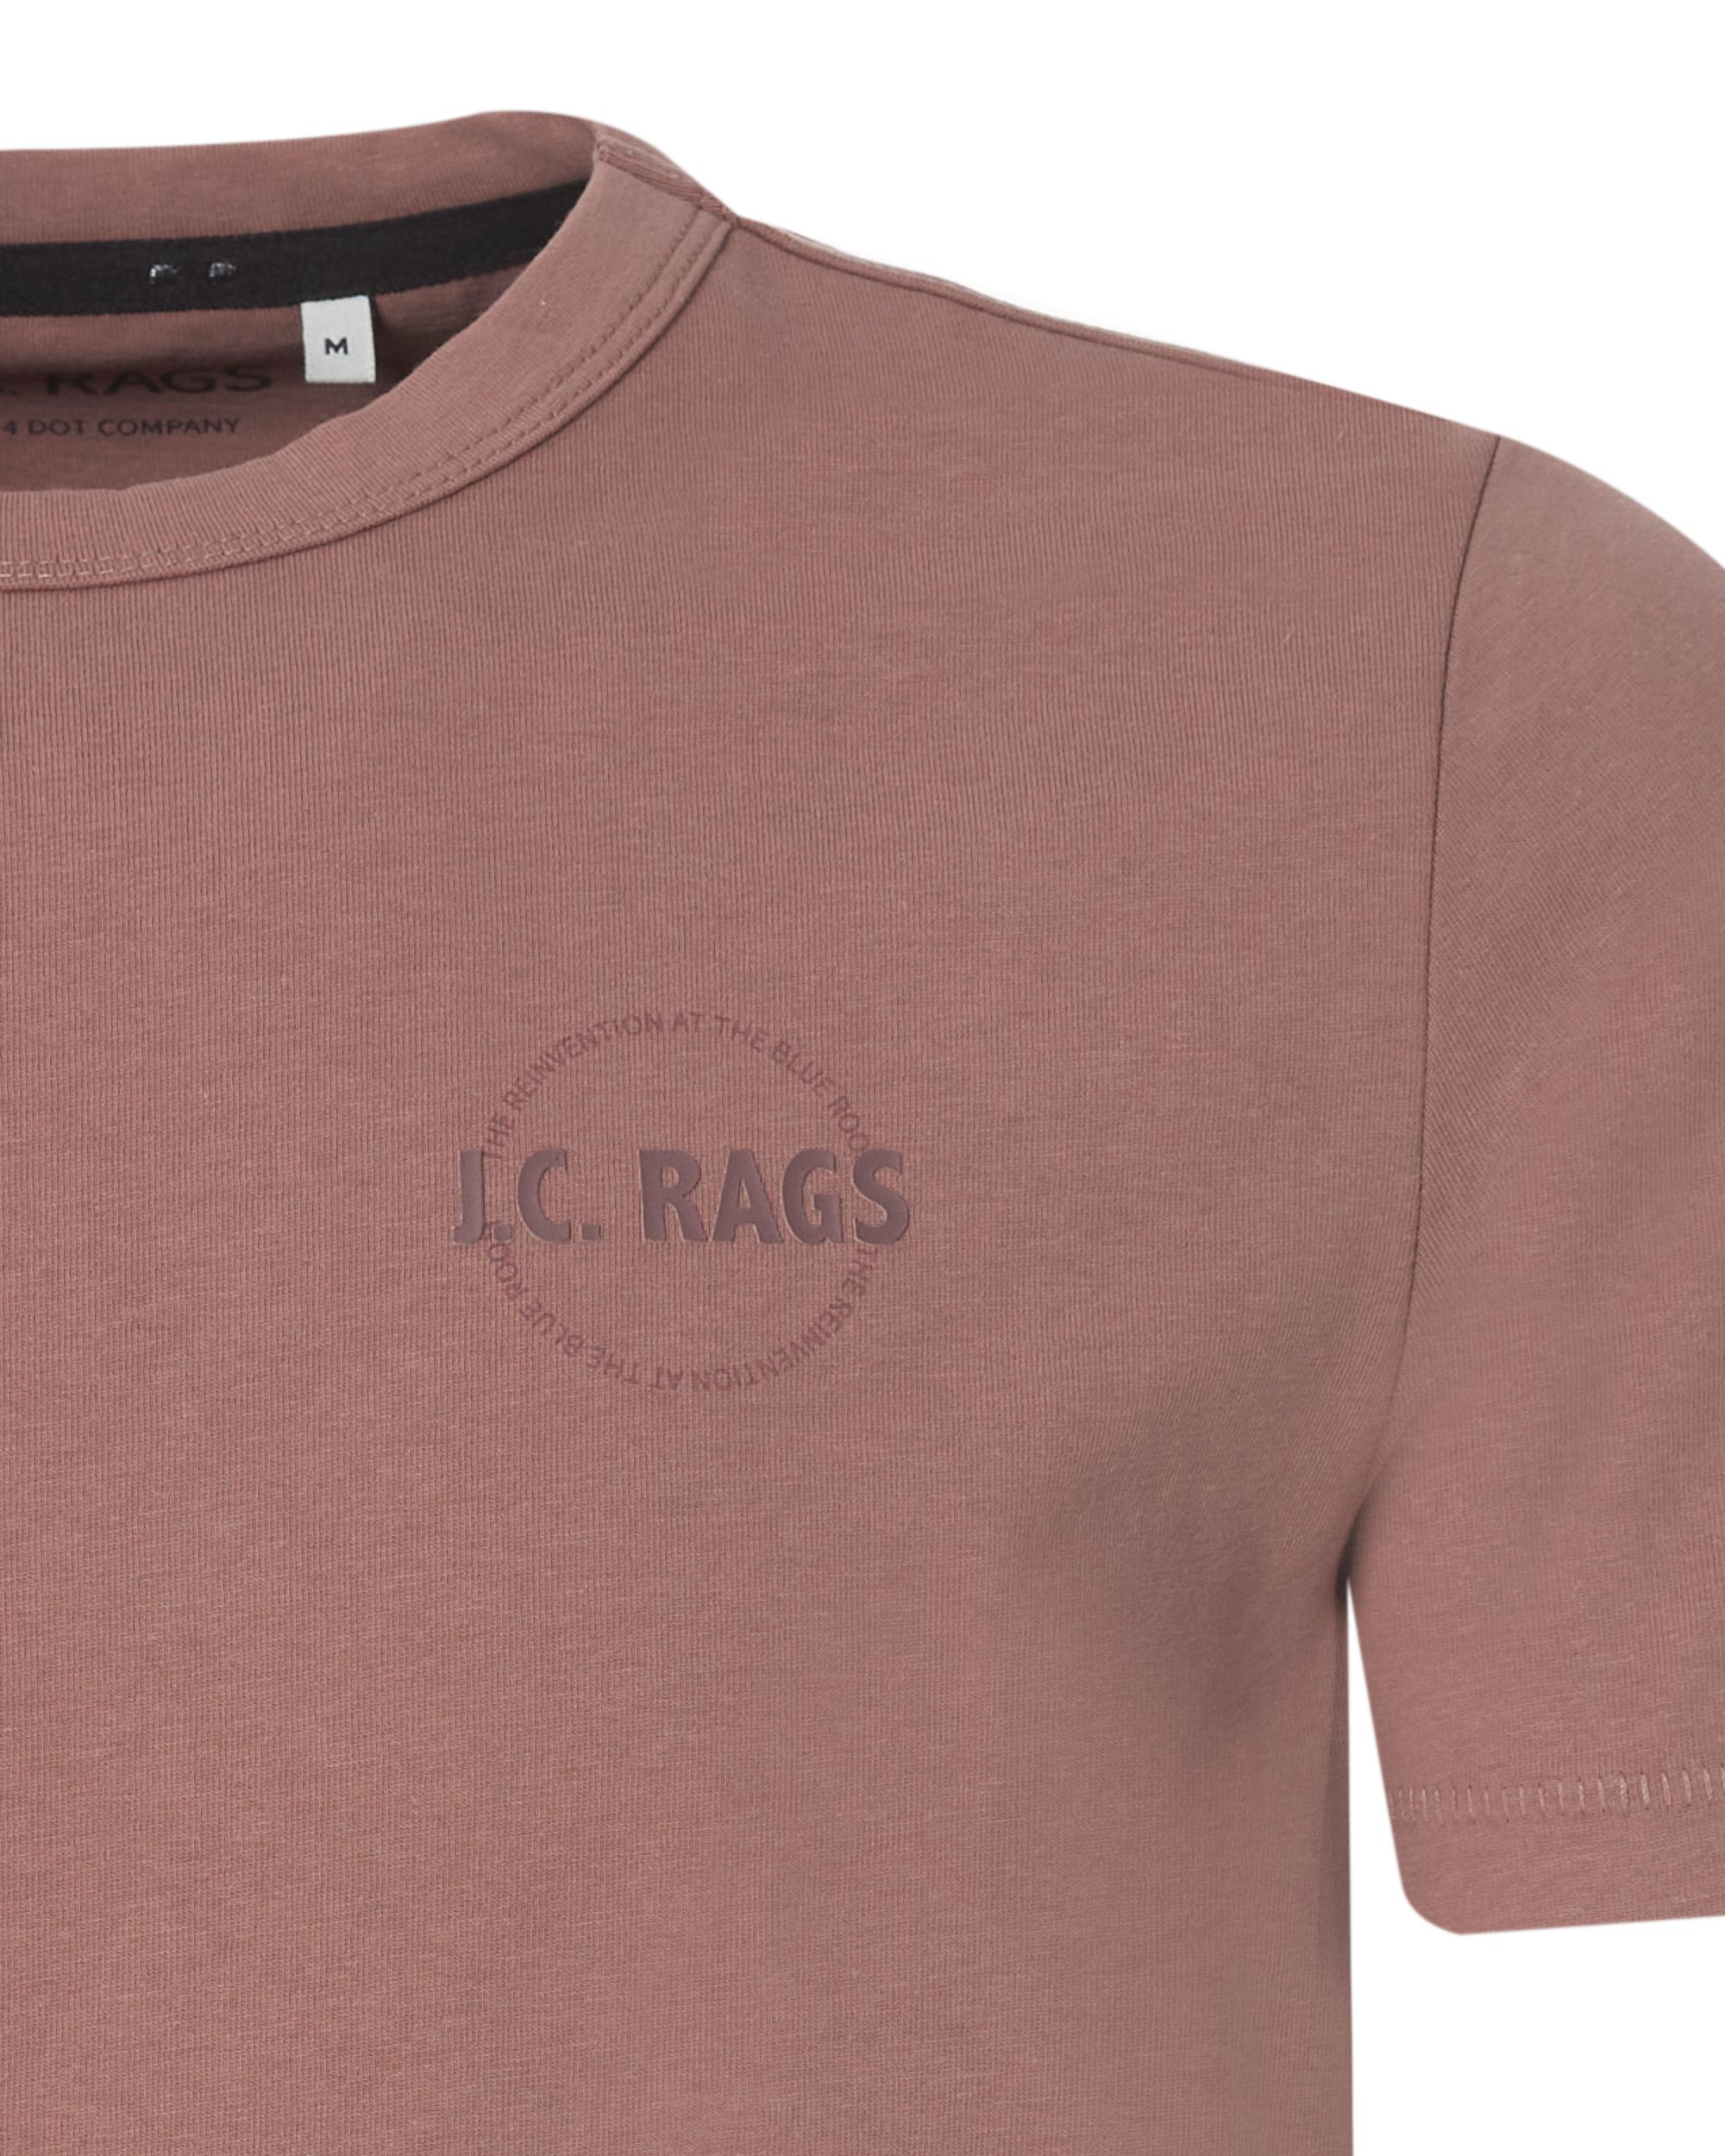 J.C. RAGS  Johan T-shirt KM Roze uni 073071-007-L